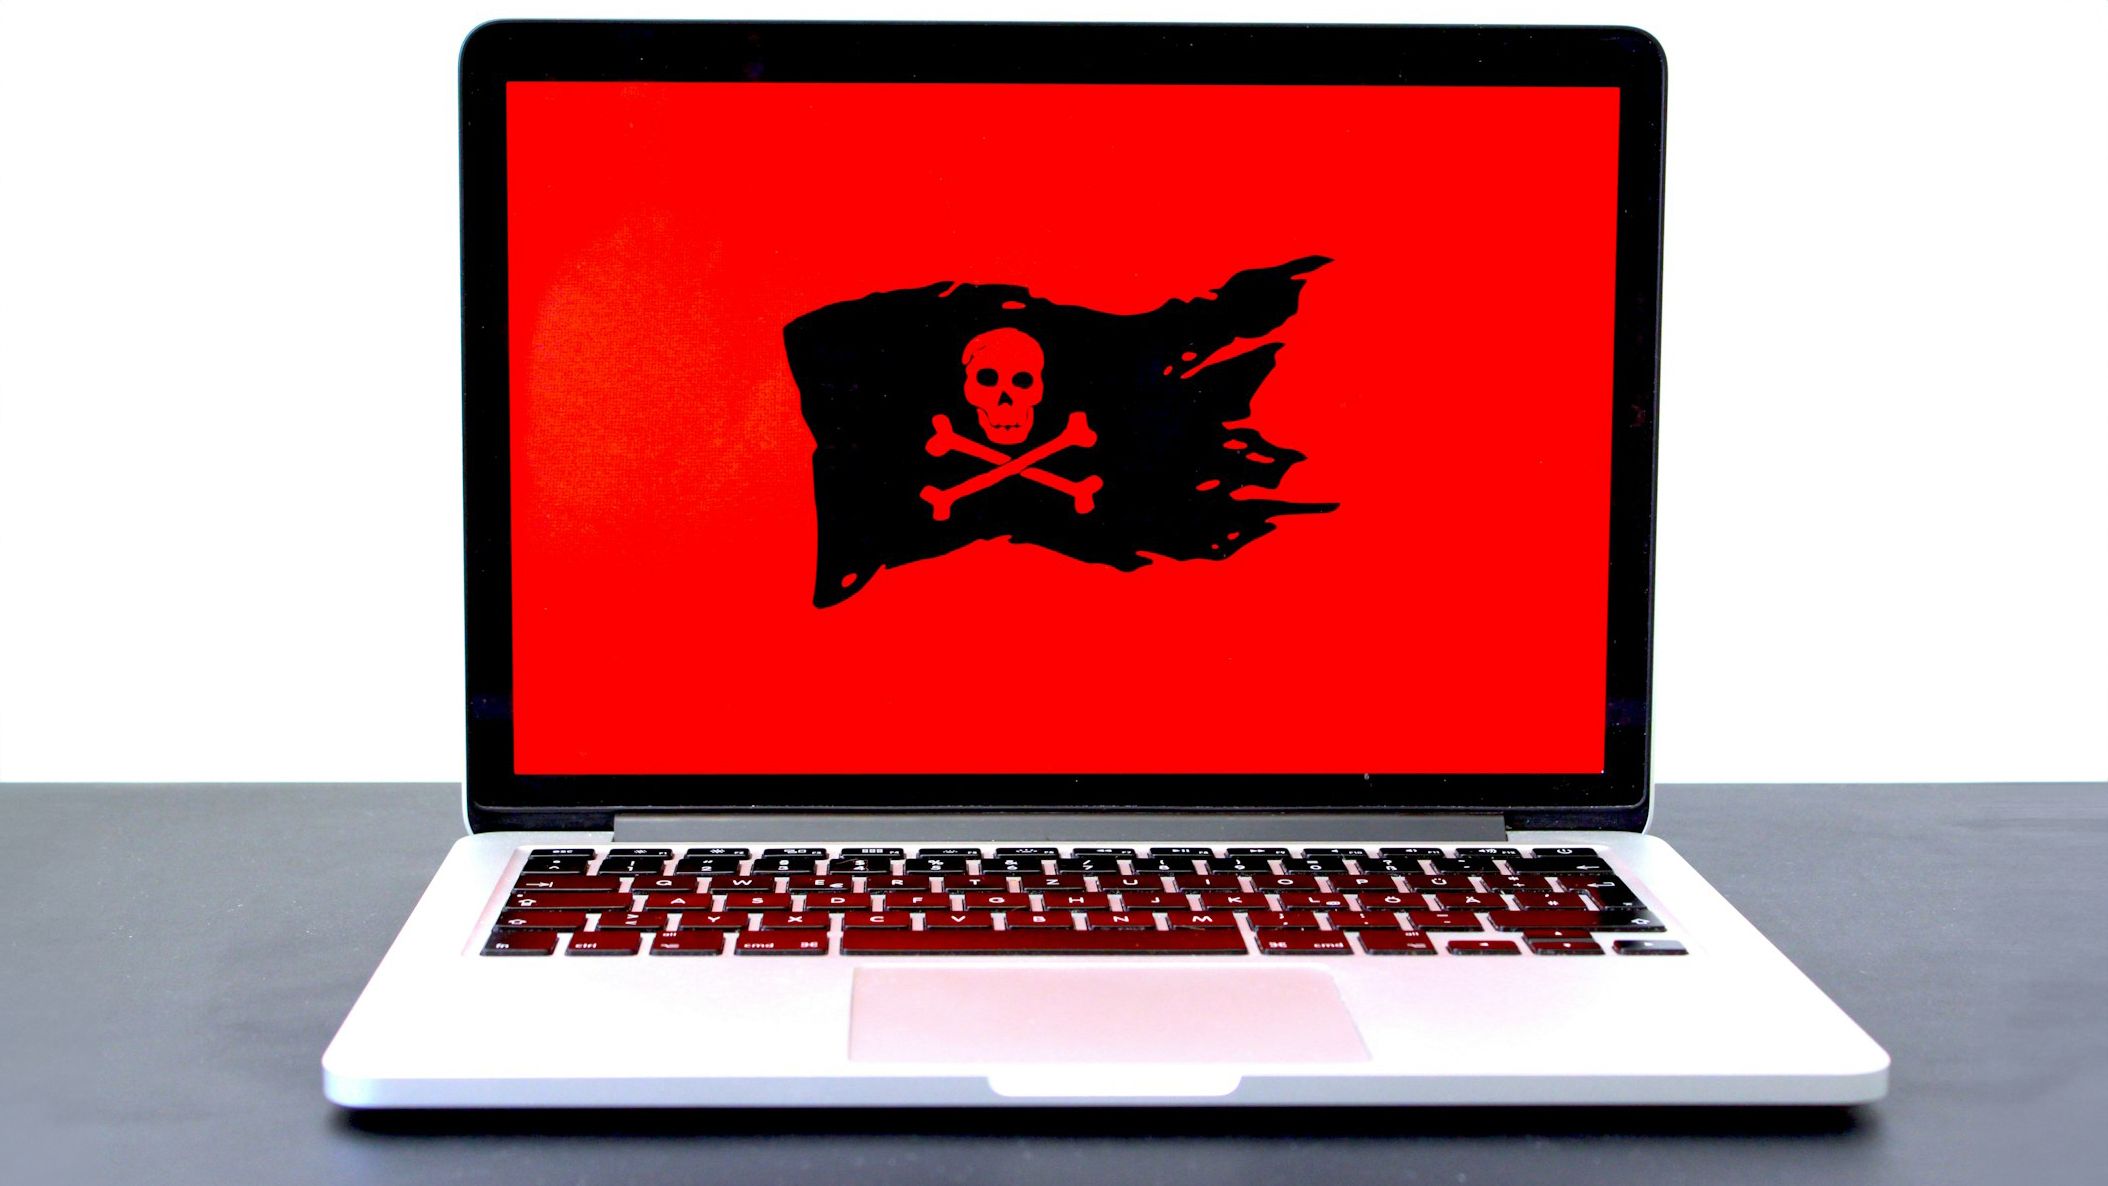 Um laptop sobre uma mesa exibindo uma grande tela vermelha com um símbolo de bandeira pirata preta, indicando uma possível ameaça de ransomware ou segurança cibernética.